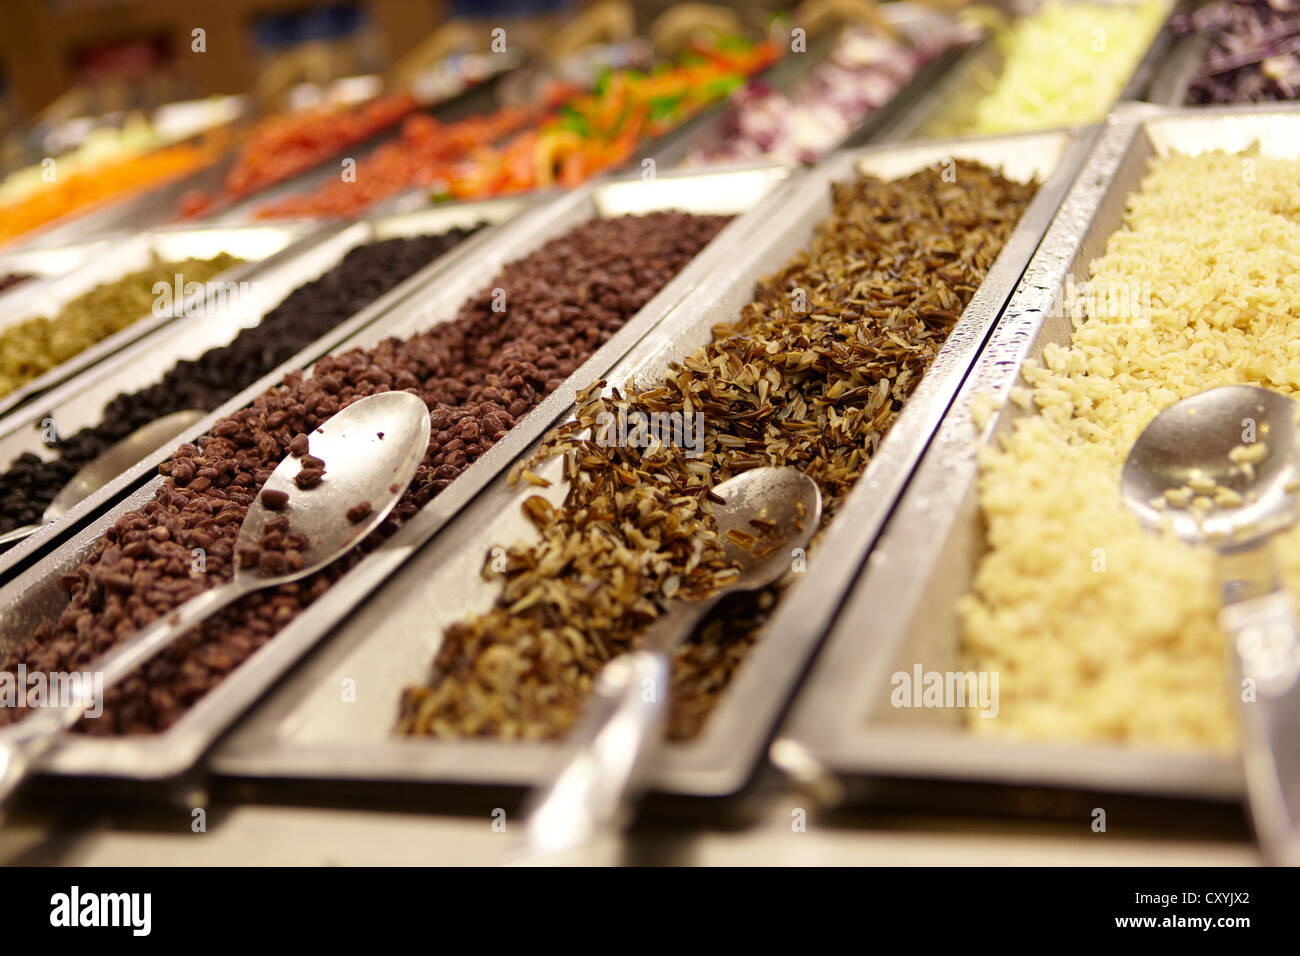 Organici di delicatessen deli contatore alimentare e salad bar Foto Stock